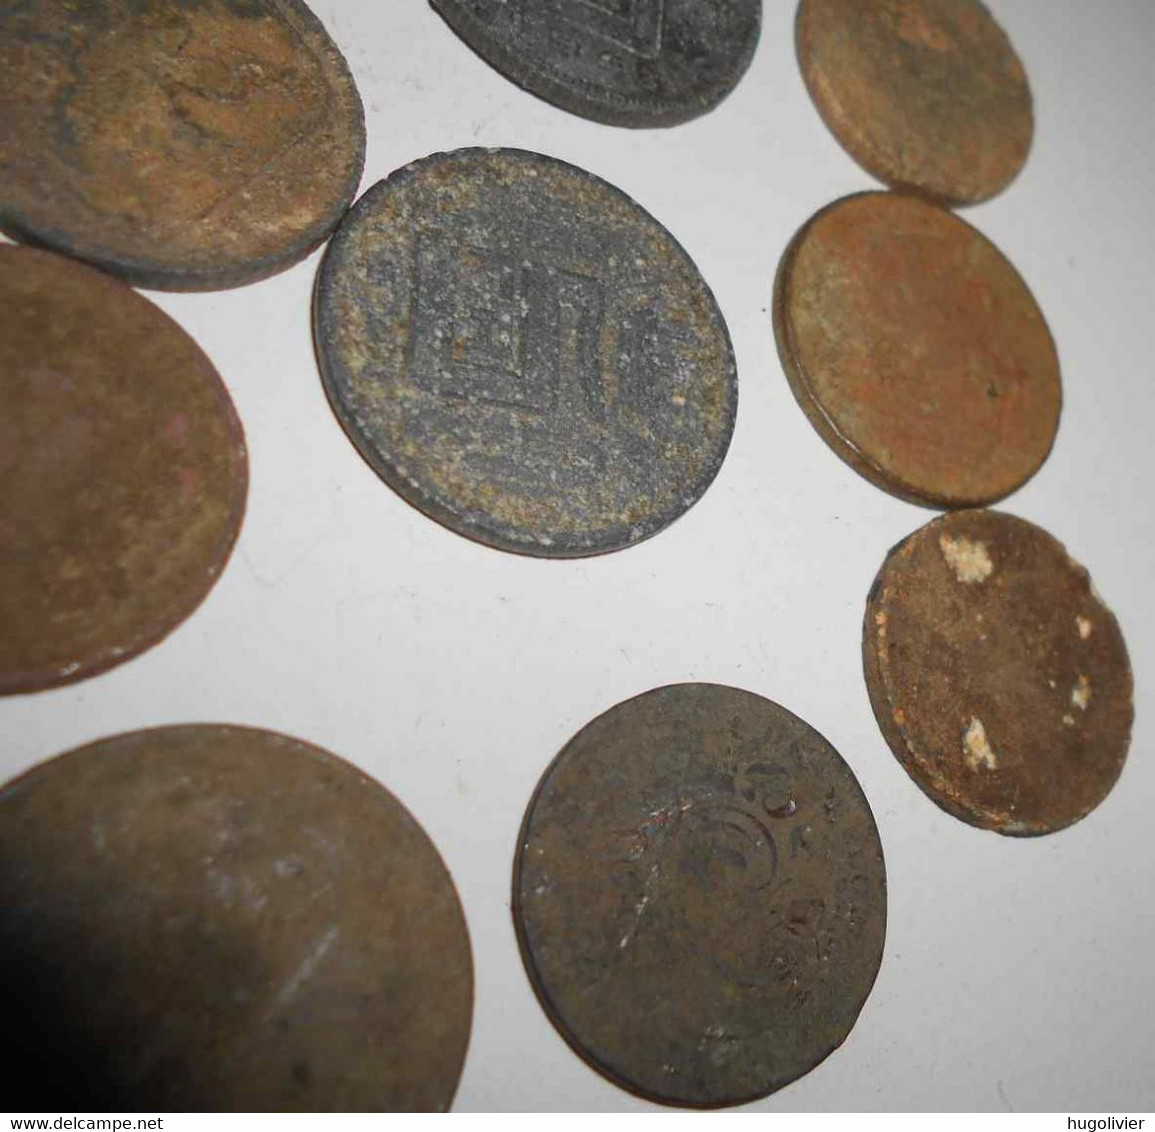 Lot de 17 monnaies 20e siècle Belgique à nettoyer et identifier